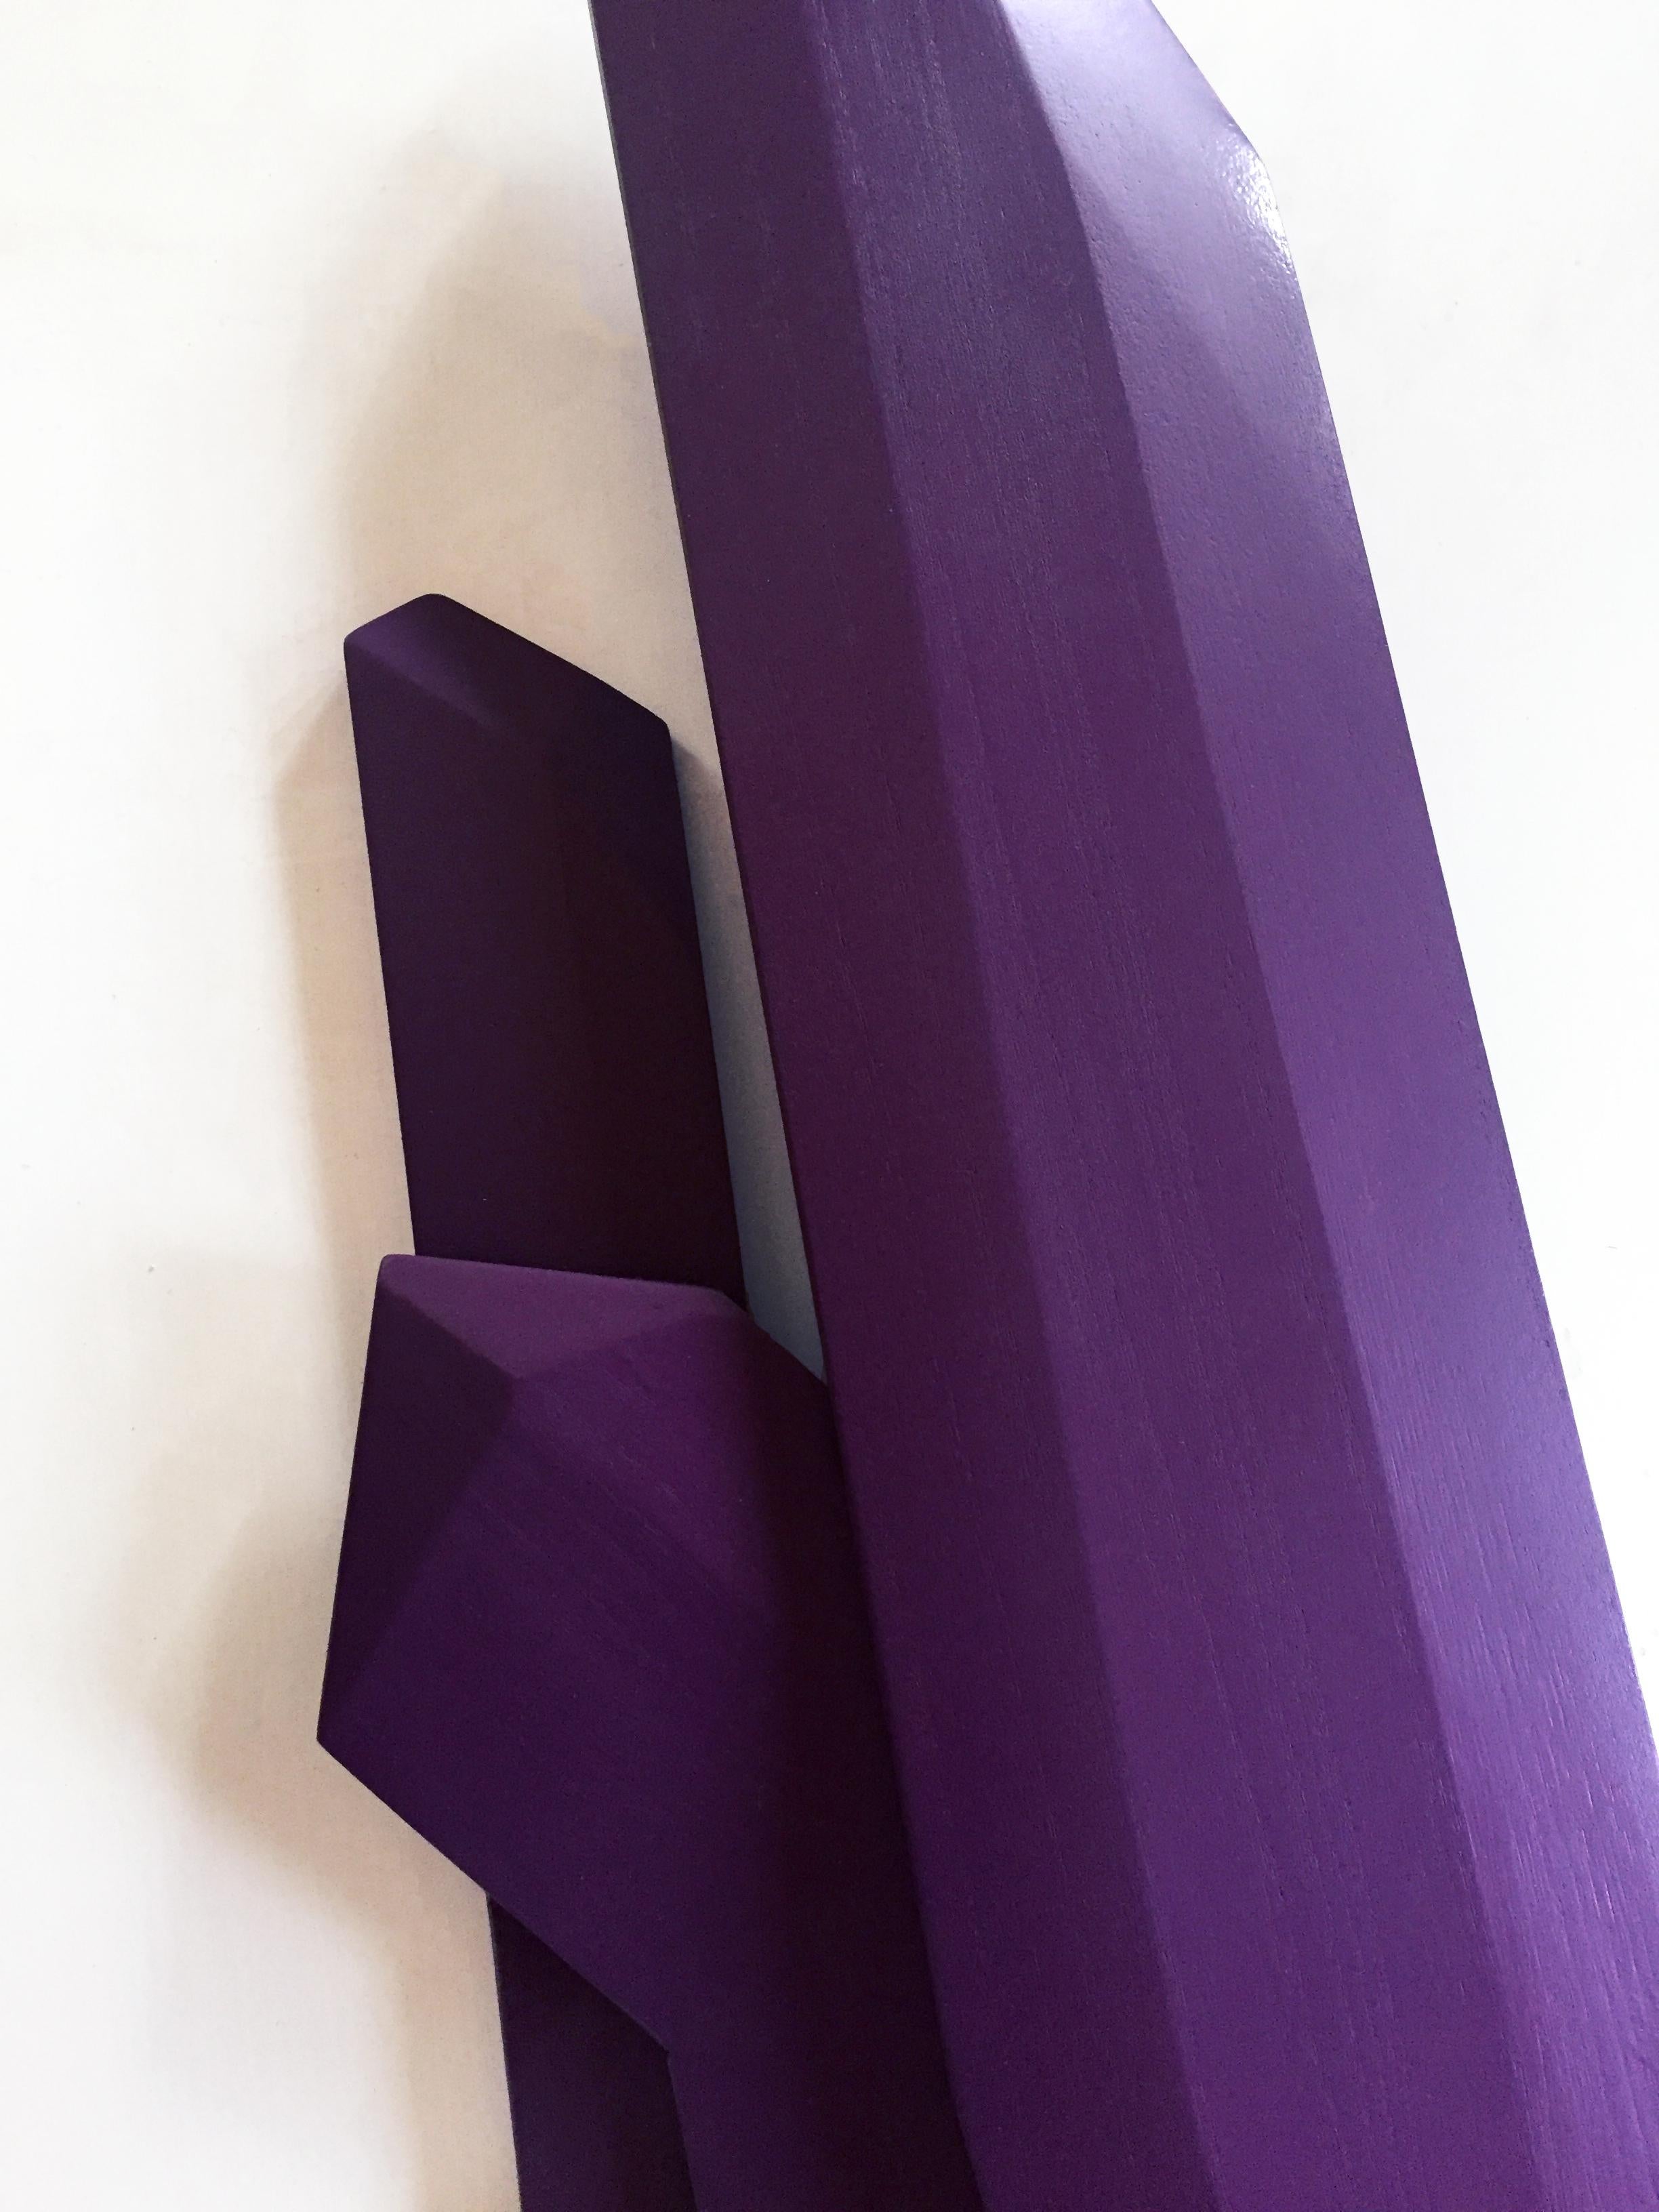 Ultra Violet Crystal (Holz, zeitgenössisches Design, geometrisch, violett, Skulptur) 1